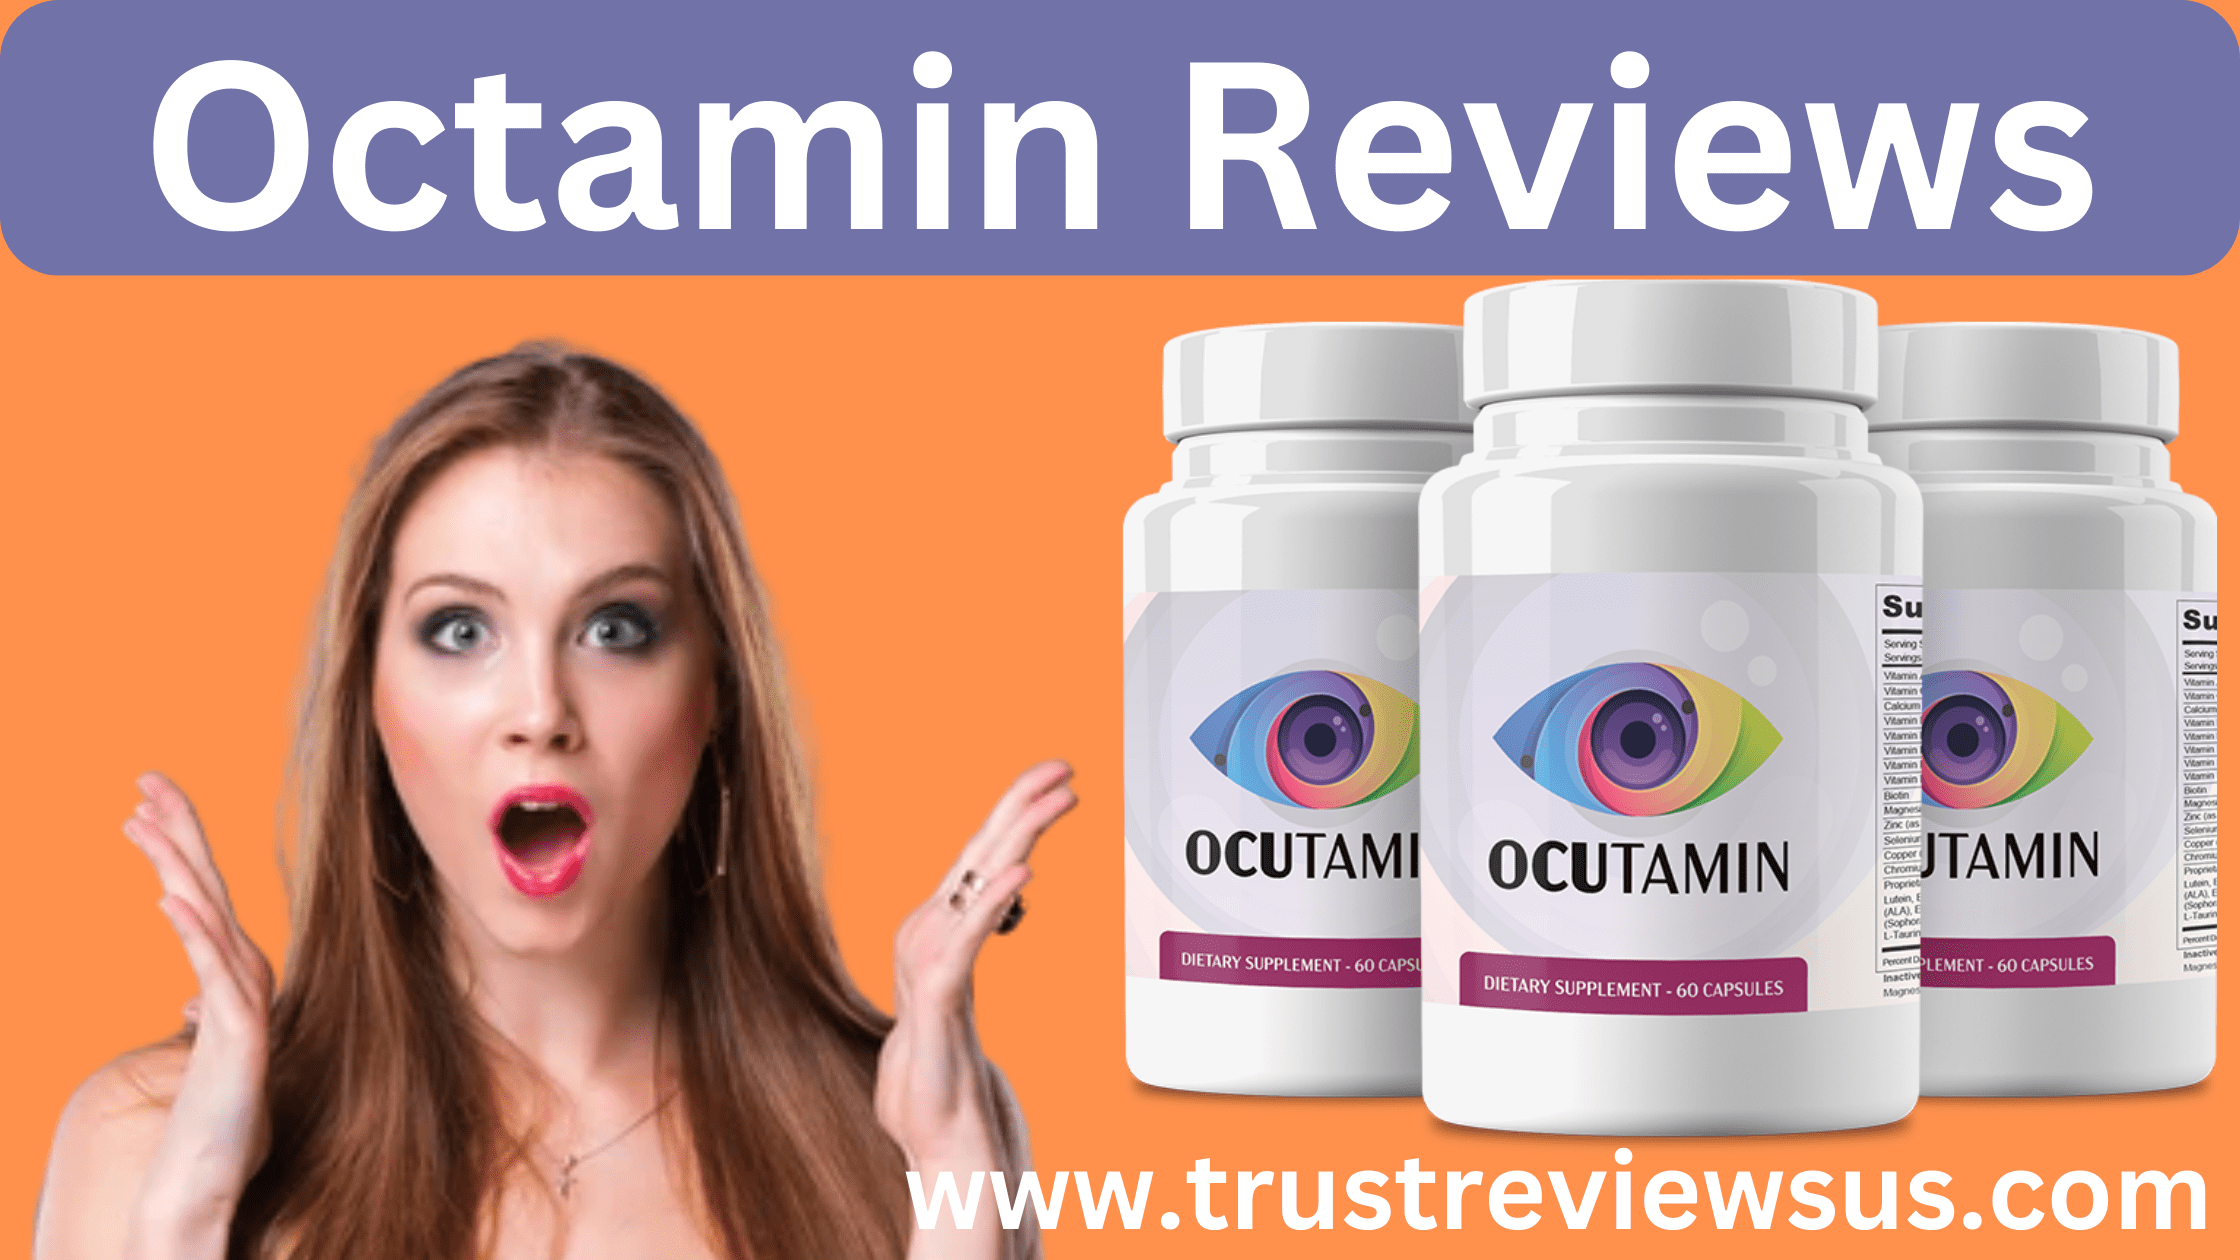 Octamin Reviews